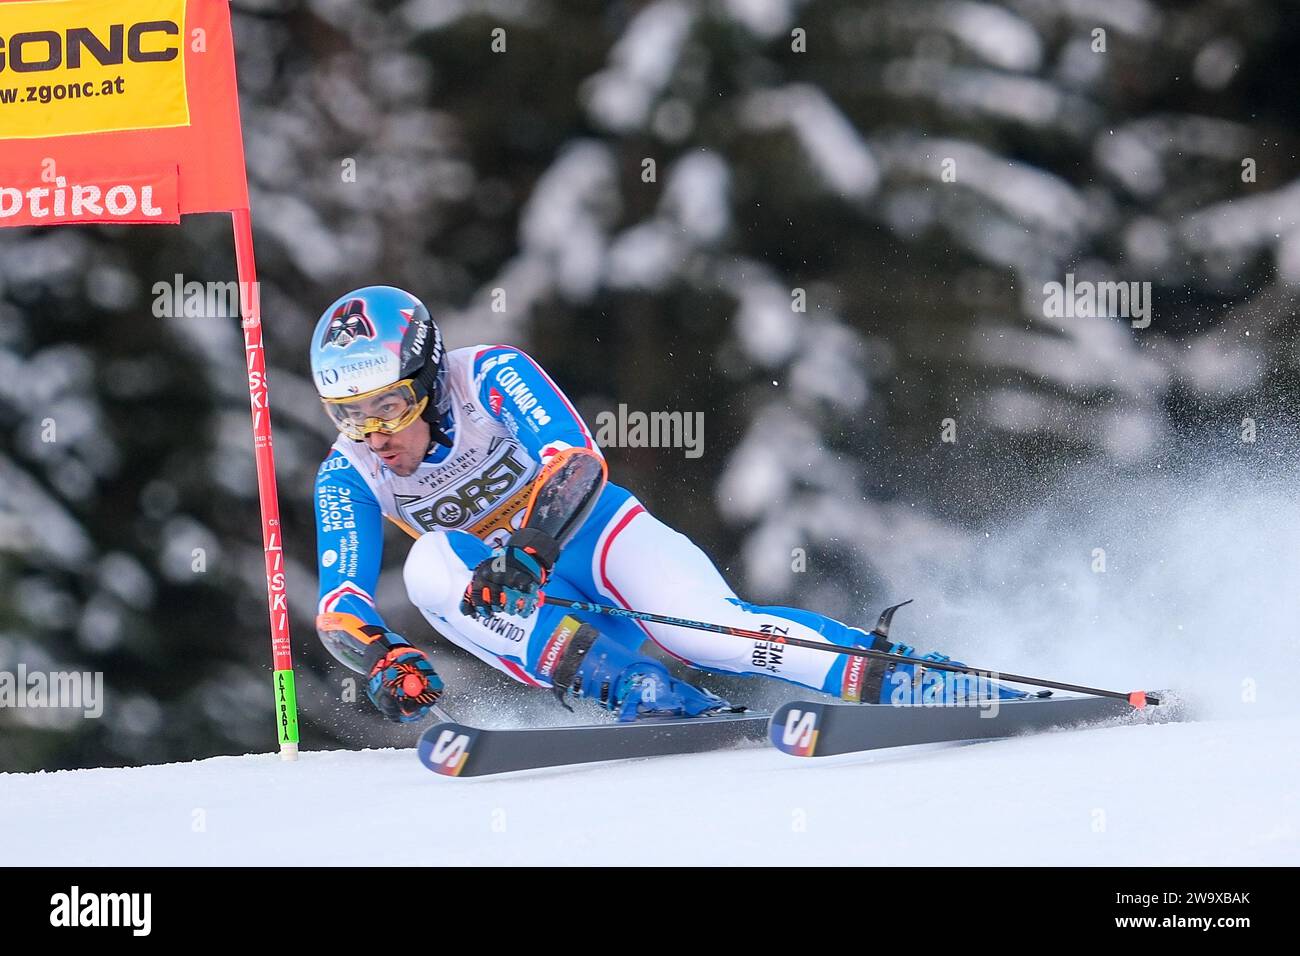 Victor Muffat-Jeandet (fra) gareggia durante la Coppa del mondo di sci alpino Audi FIS, MenÕs Giant Slalom Race sulla Gran Risa Slope, alta Badia il 17 dicembre, Foto Stock